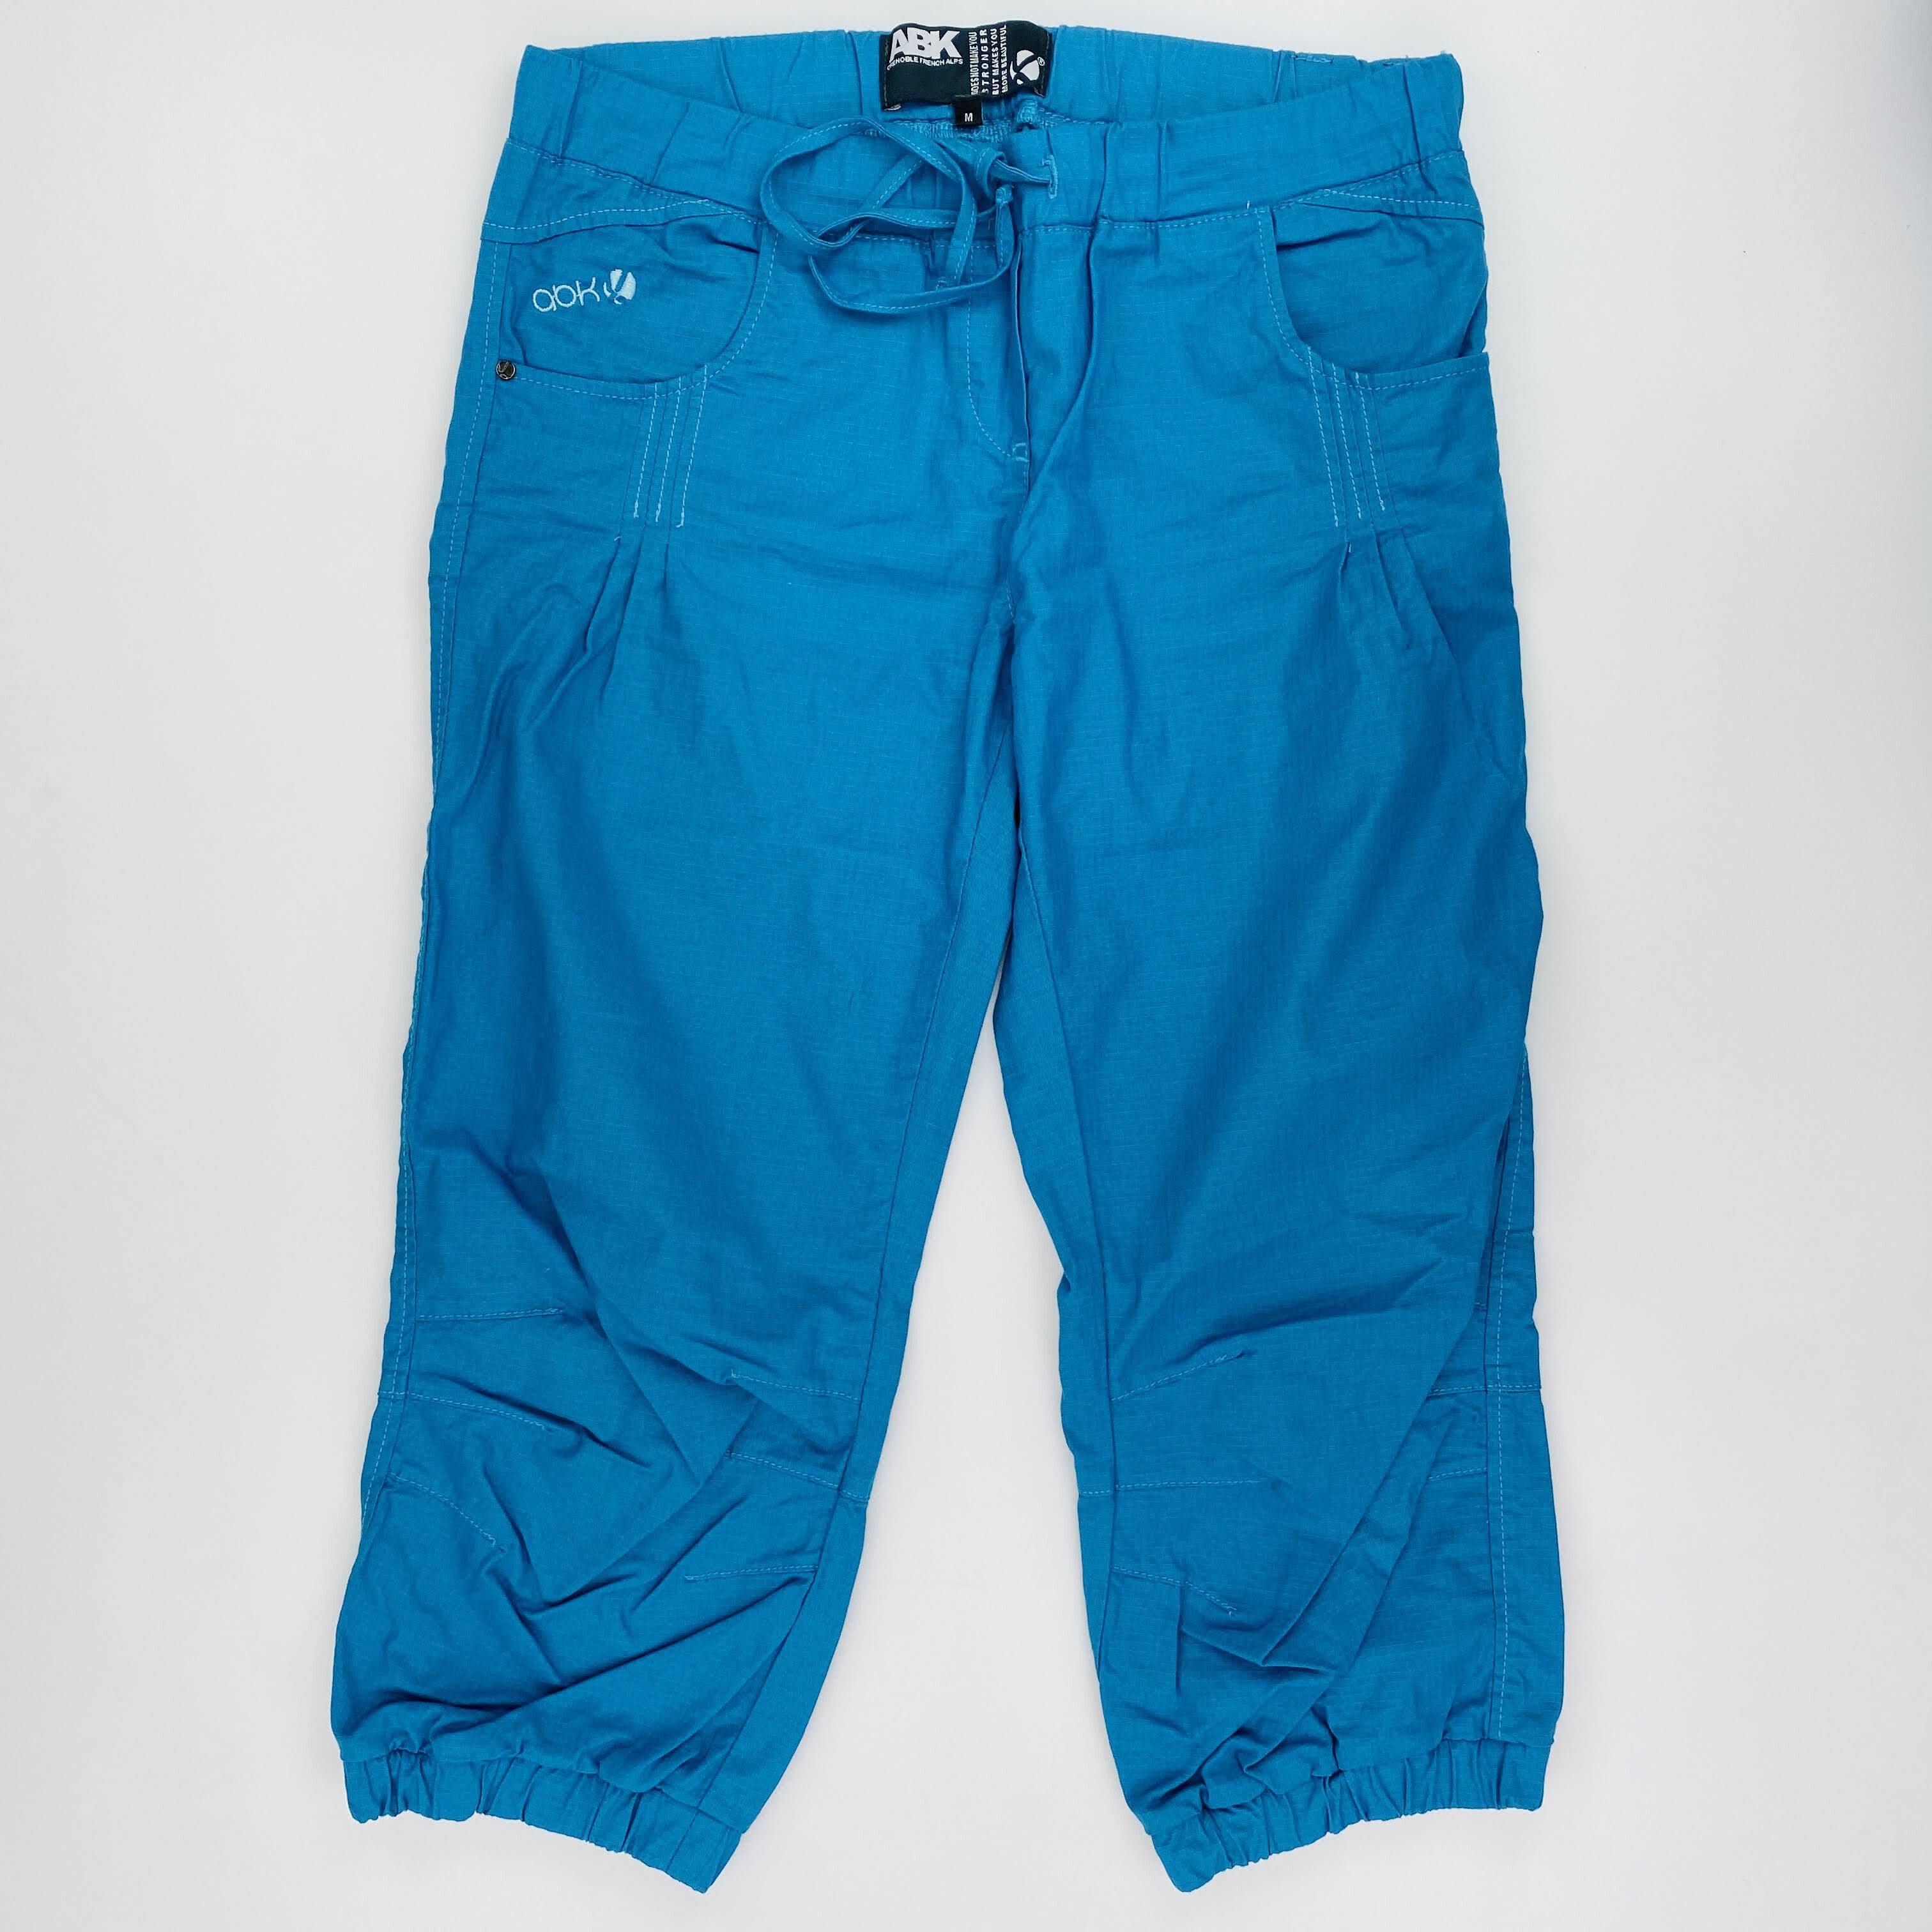 ABK Sikia Quarter Pant V3 W - Second Hand Running leggings - Women's - Blue - M | Hardloop